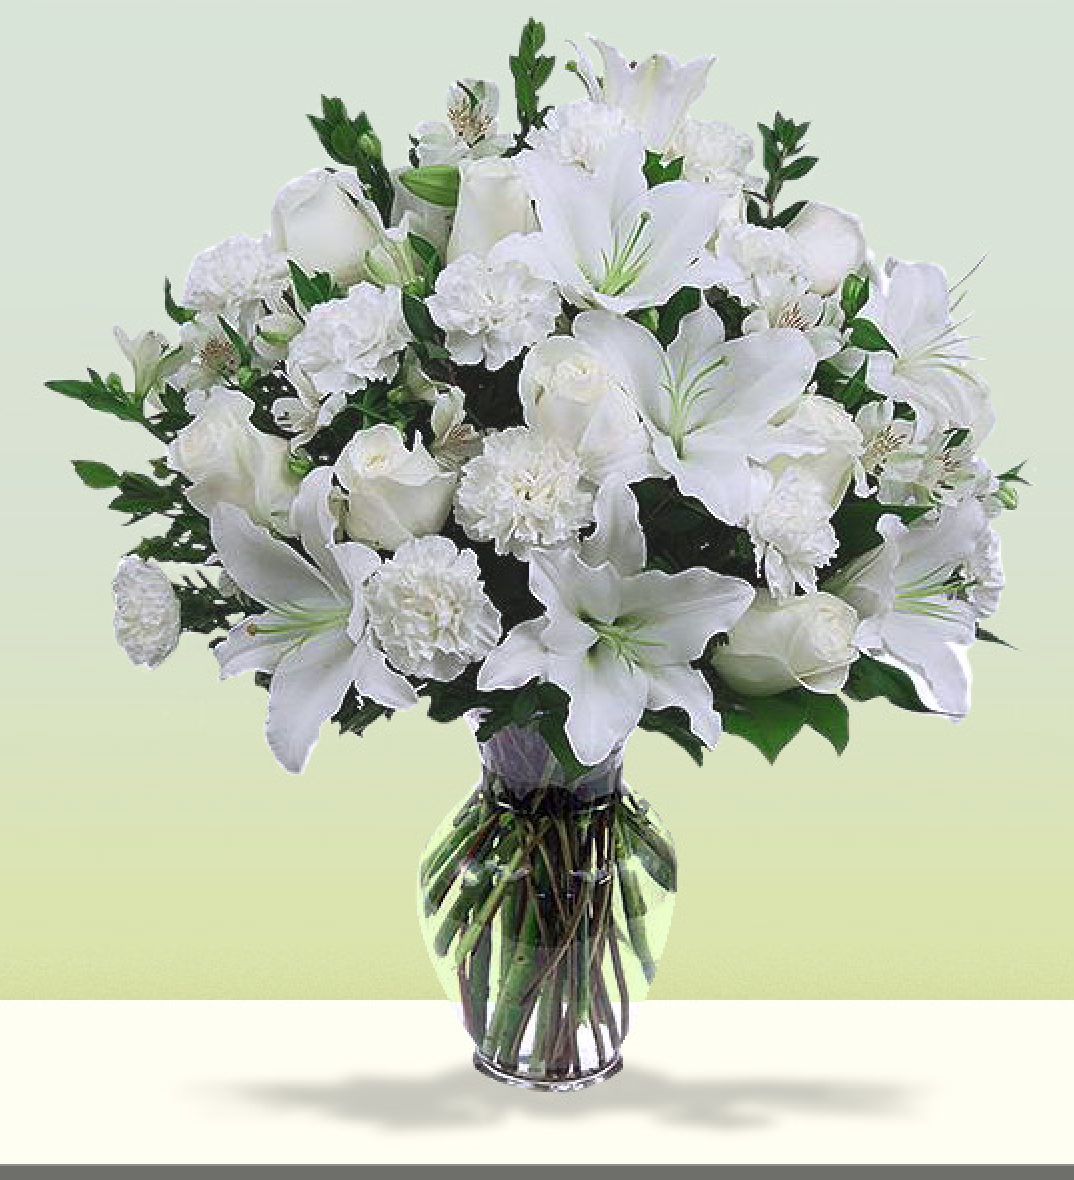 Classic Condolence Bouquet, Sympathy Flowers